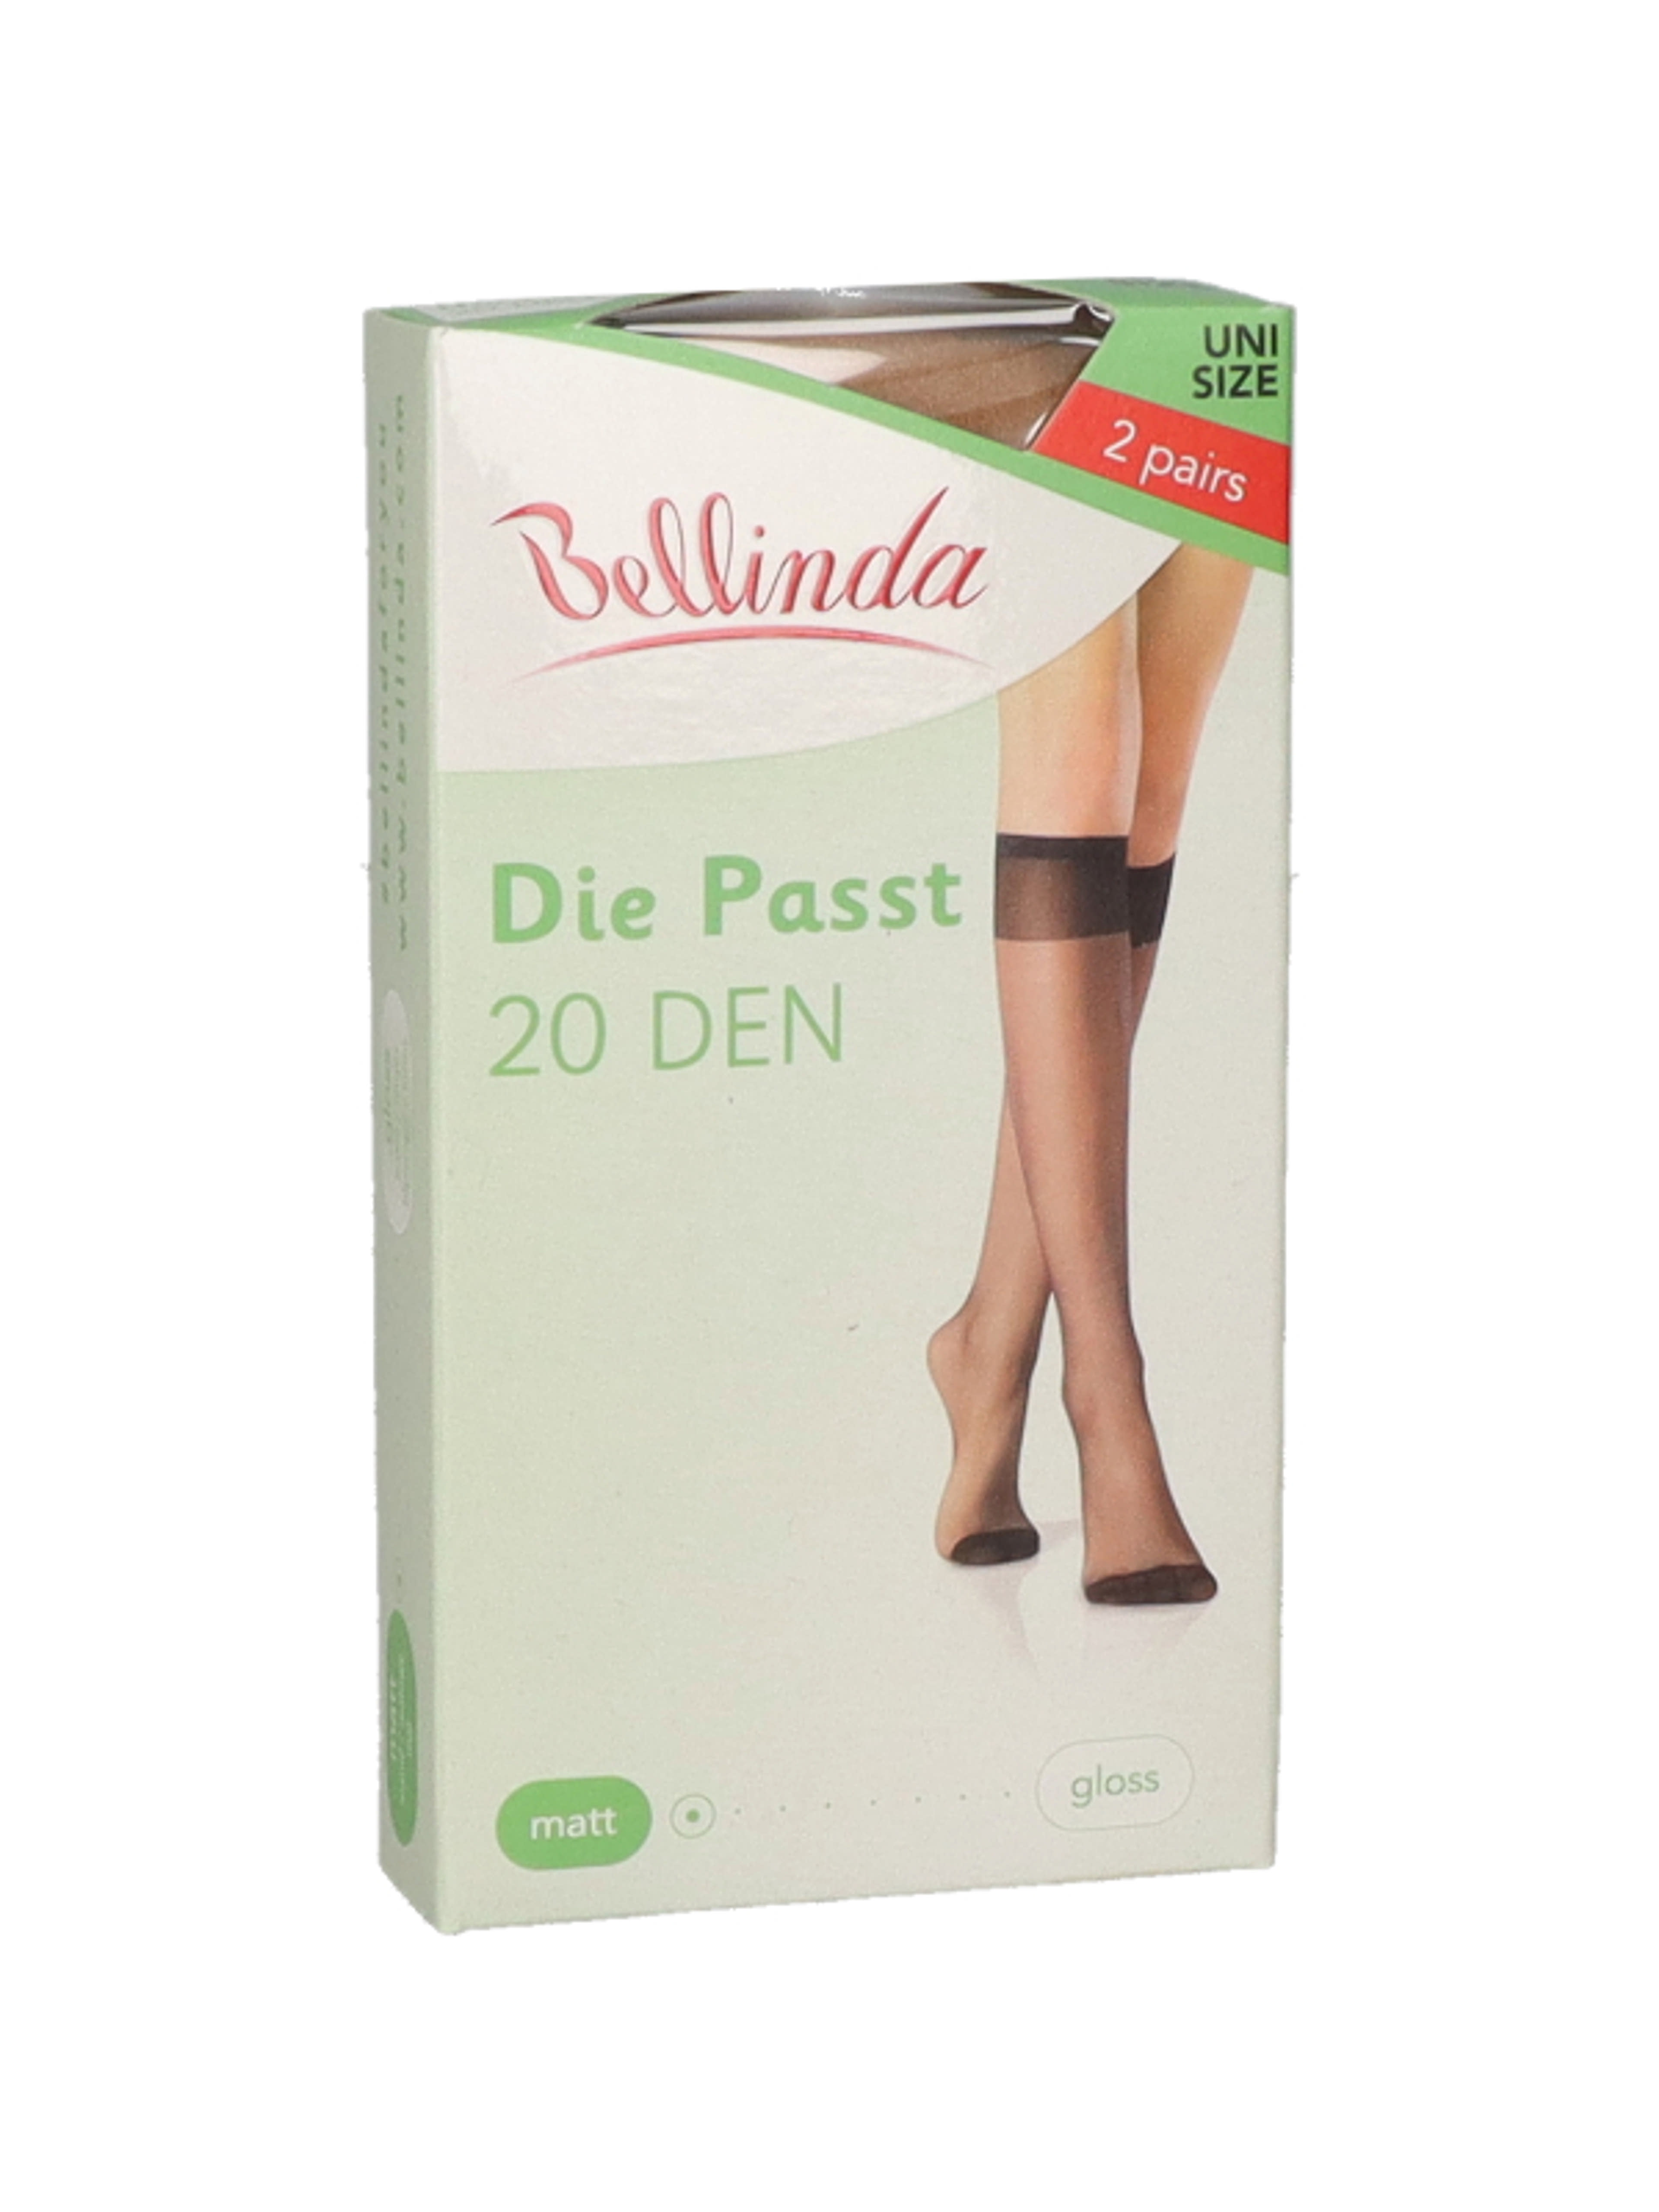 Bellinda Die Passt 20 térdfix, almond unisex - 2 db-2